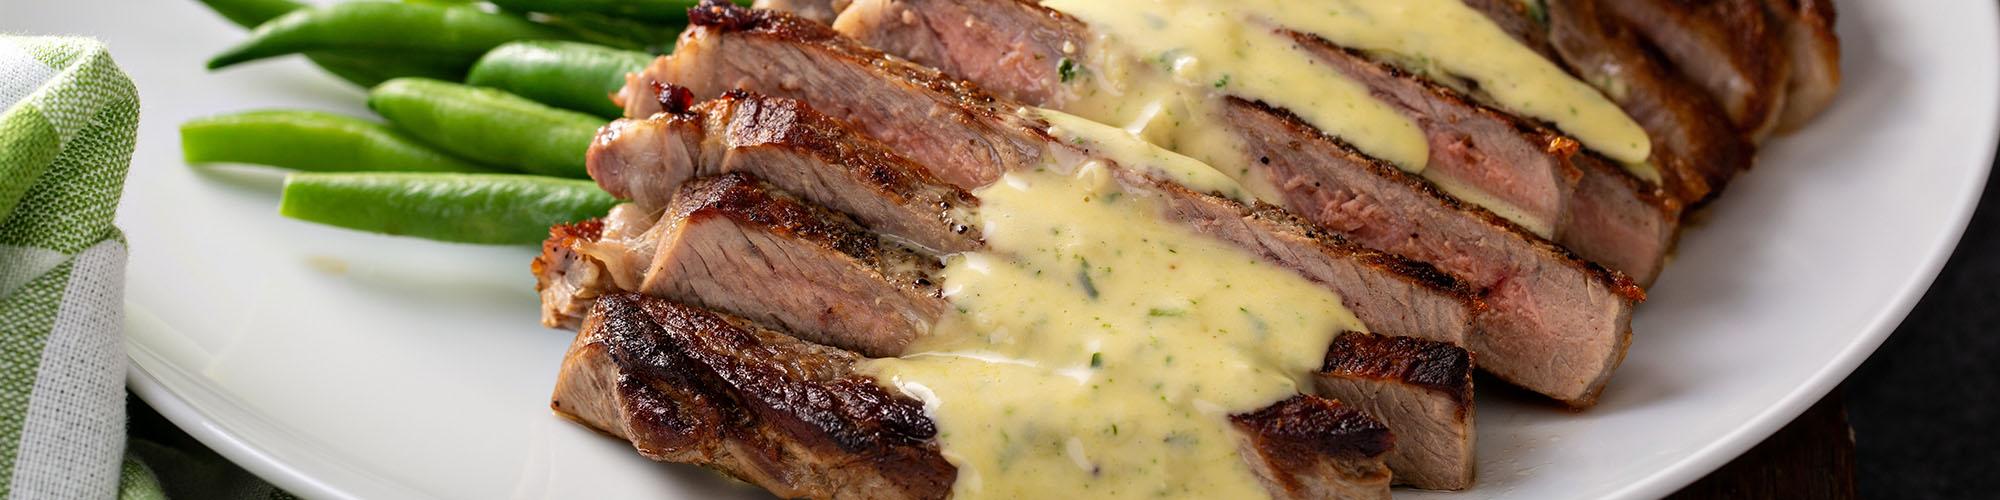 Steak mit Sauce Béarnaise und Bratkartoffeln